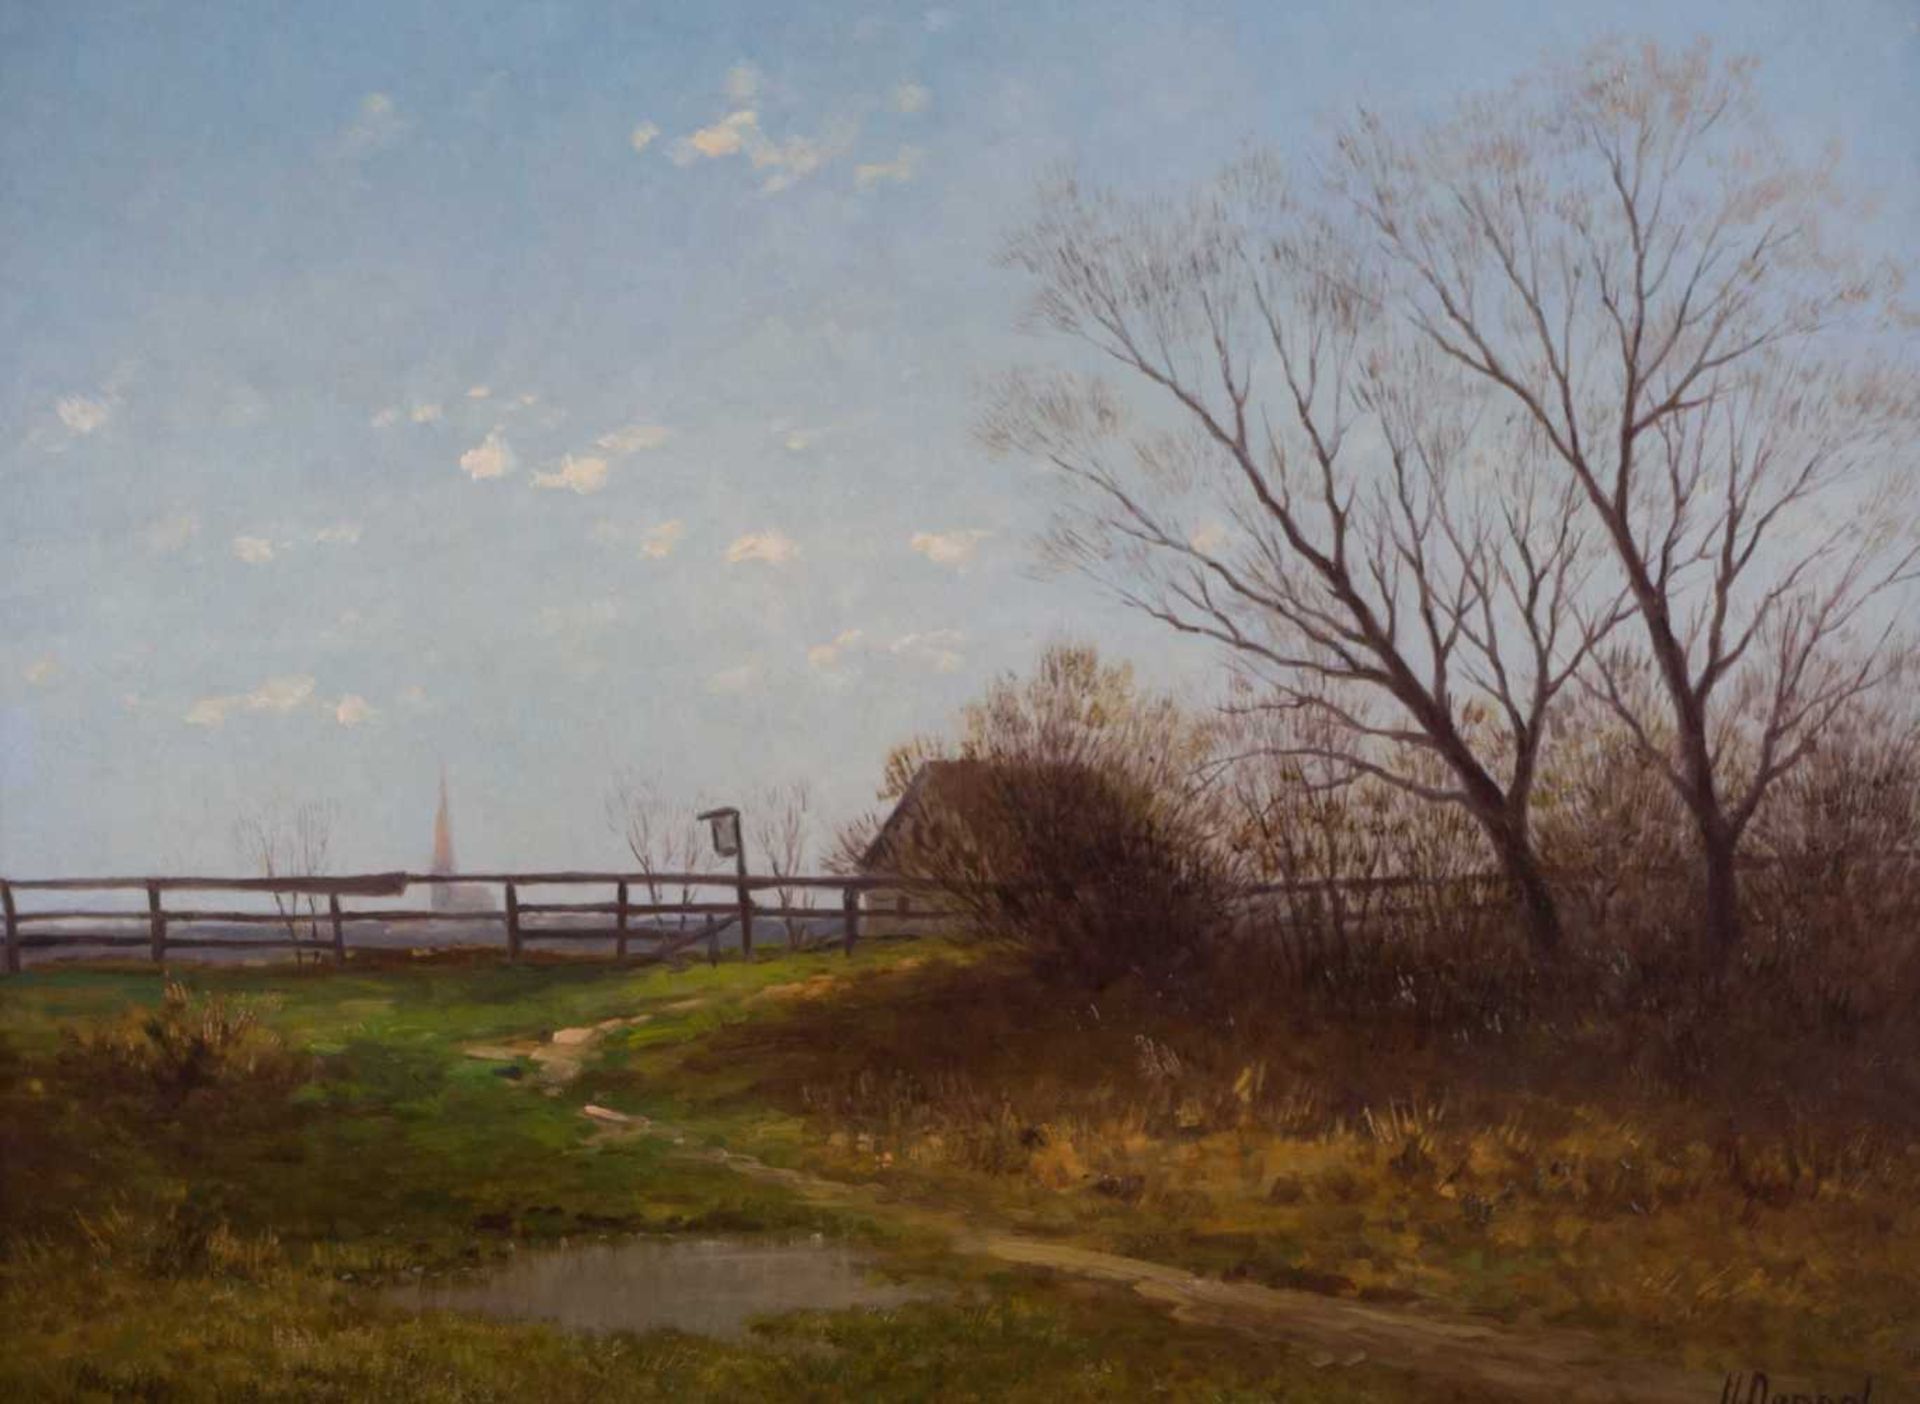 Heinrich NEPPEL (1874-1936) "Landschaft mit Bauernhaus" Gemälde Öl/Leinwand, 42 cm x 56 cm, rechts